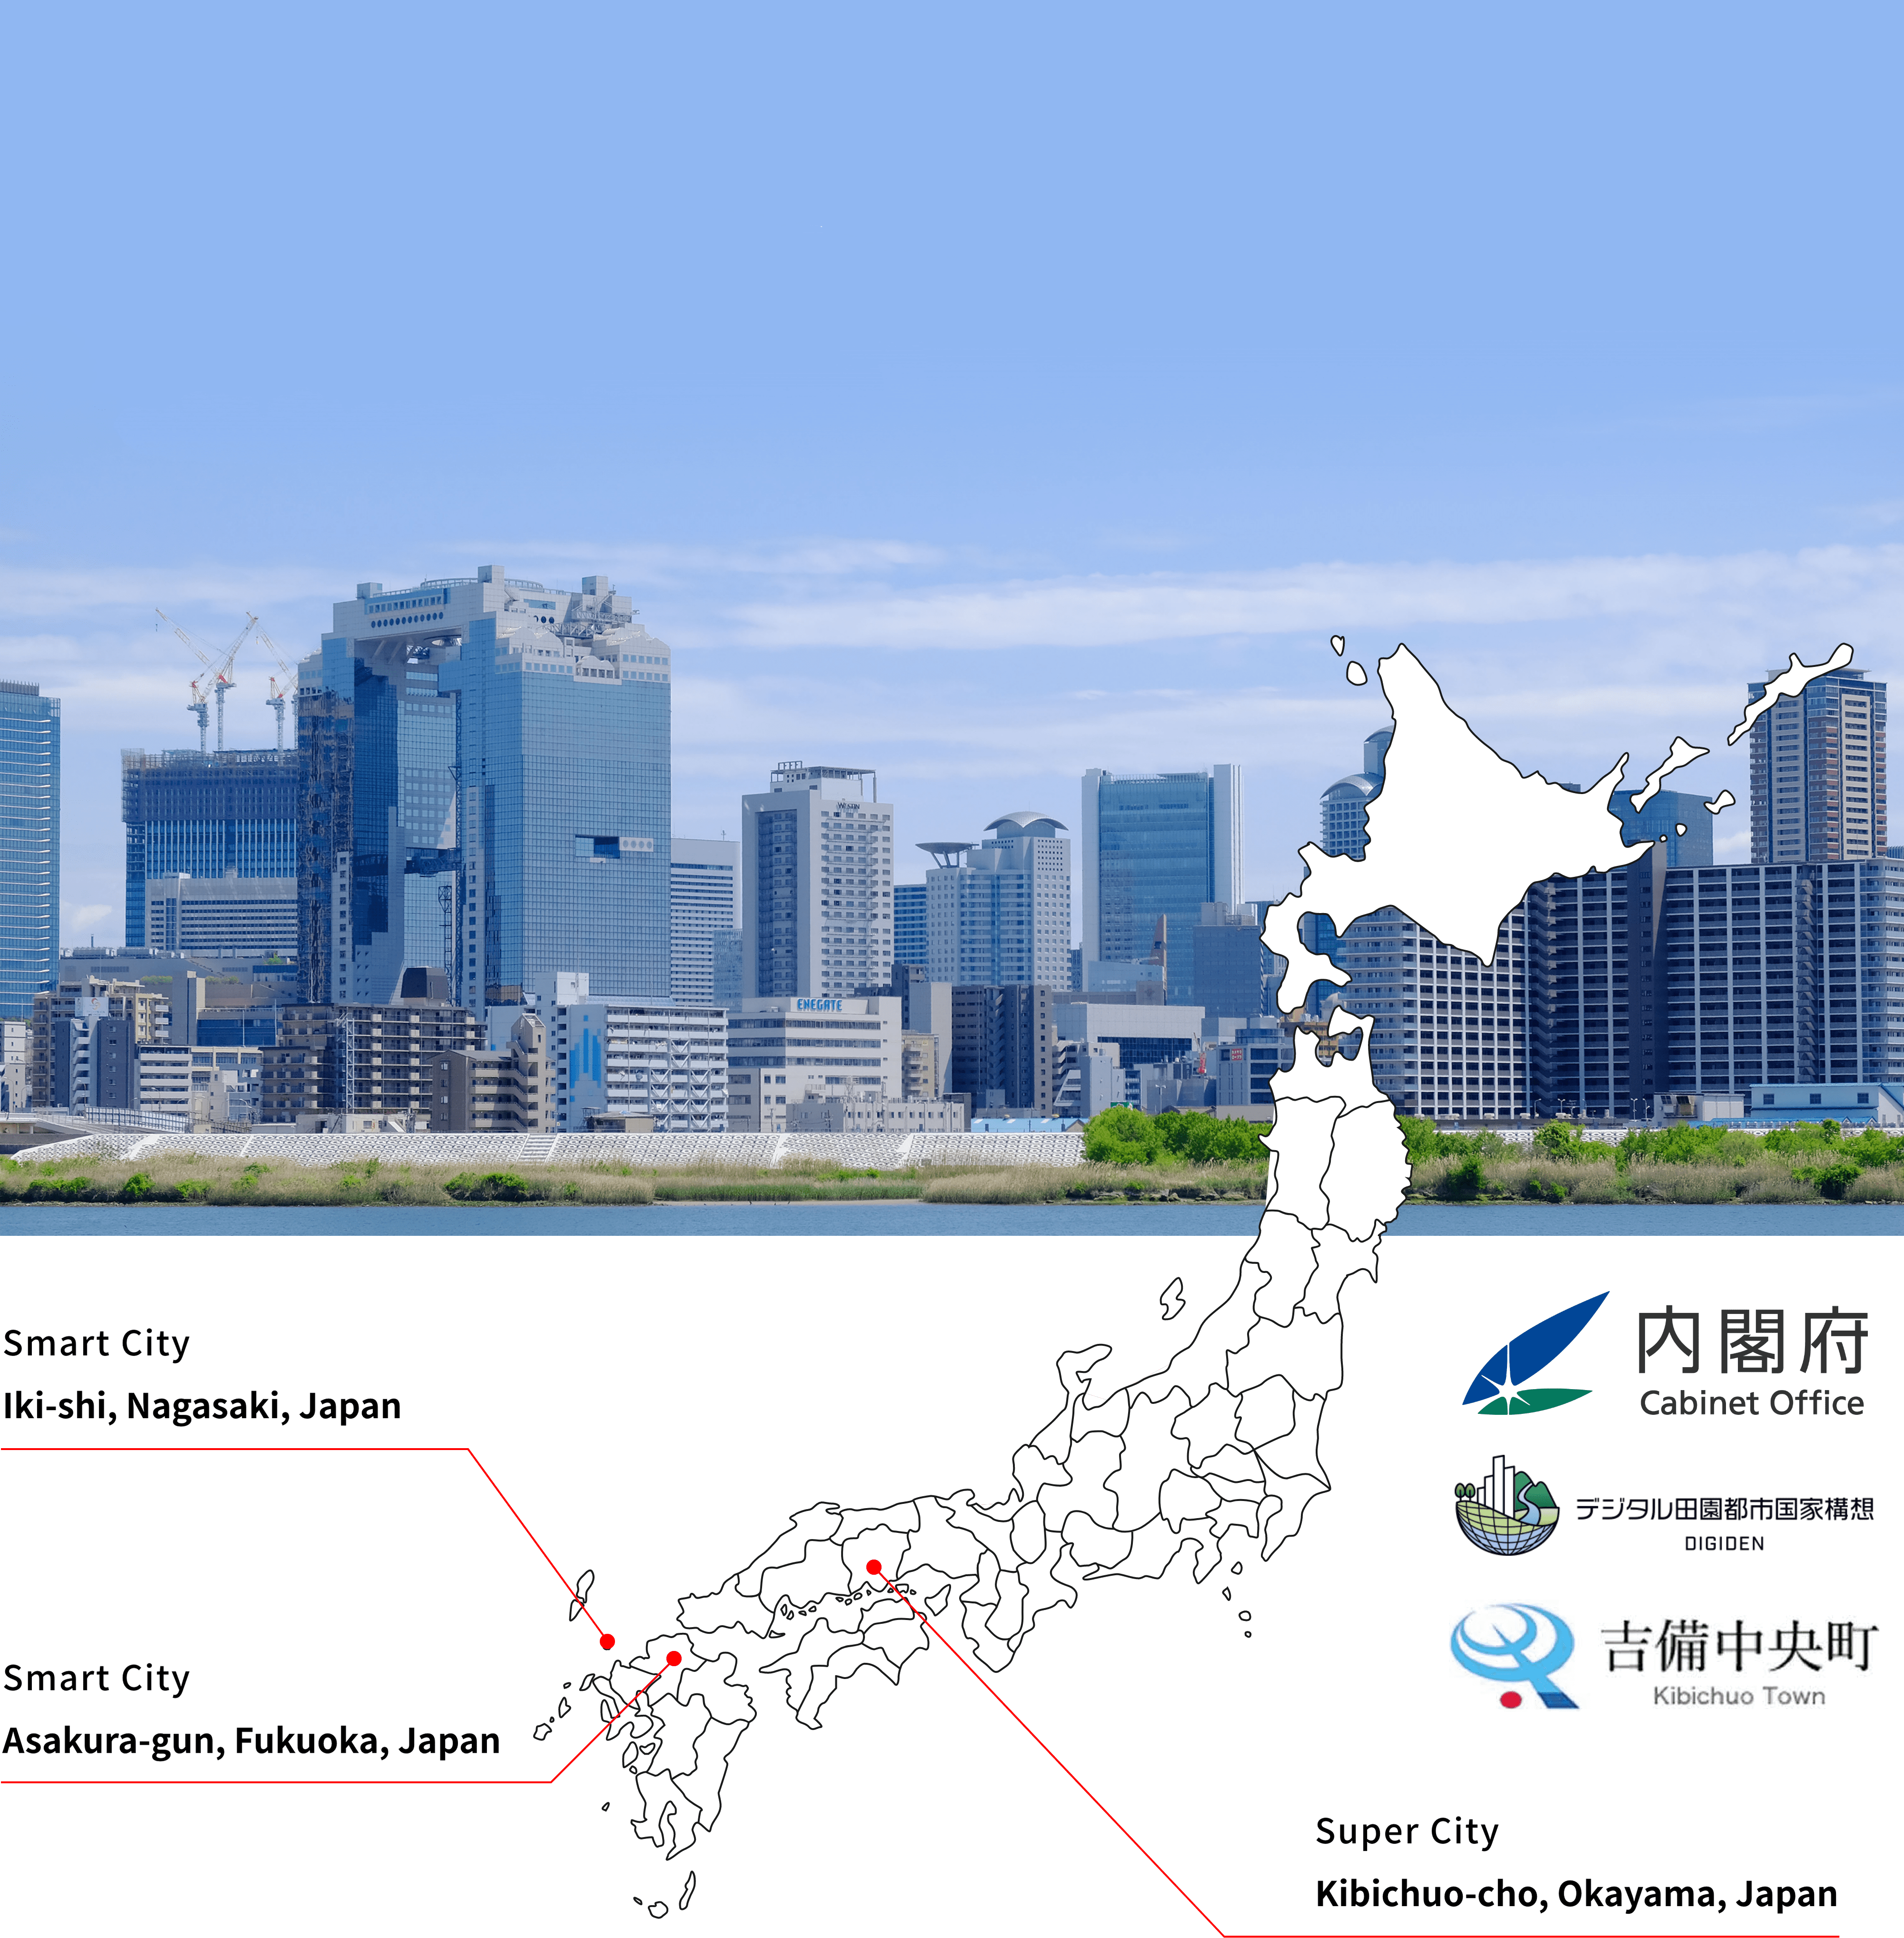 Smart City Concept: Iki City, Nagasaki Prefecture; Higashimine Village, Asakura-gun, Fukuoka Prefecture; Kibichuo Town, Kaga-gun, Okayama Prefecture